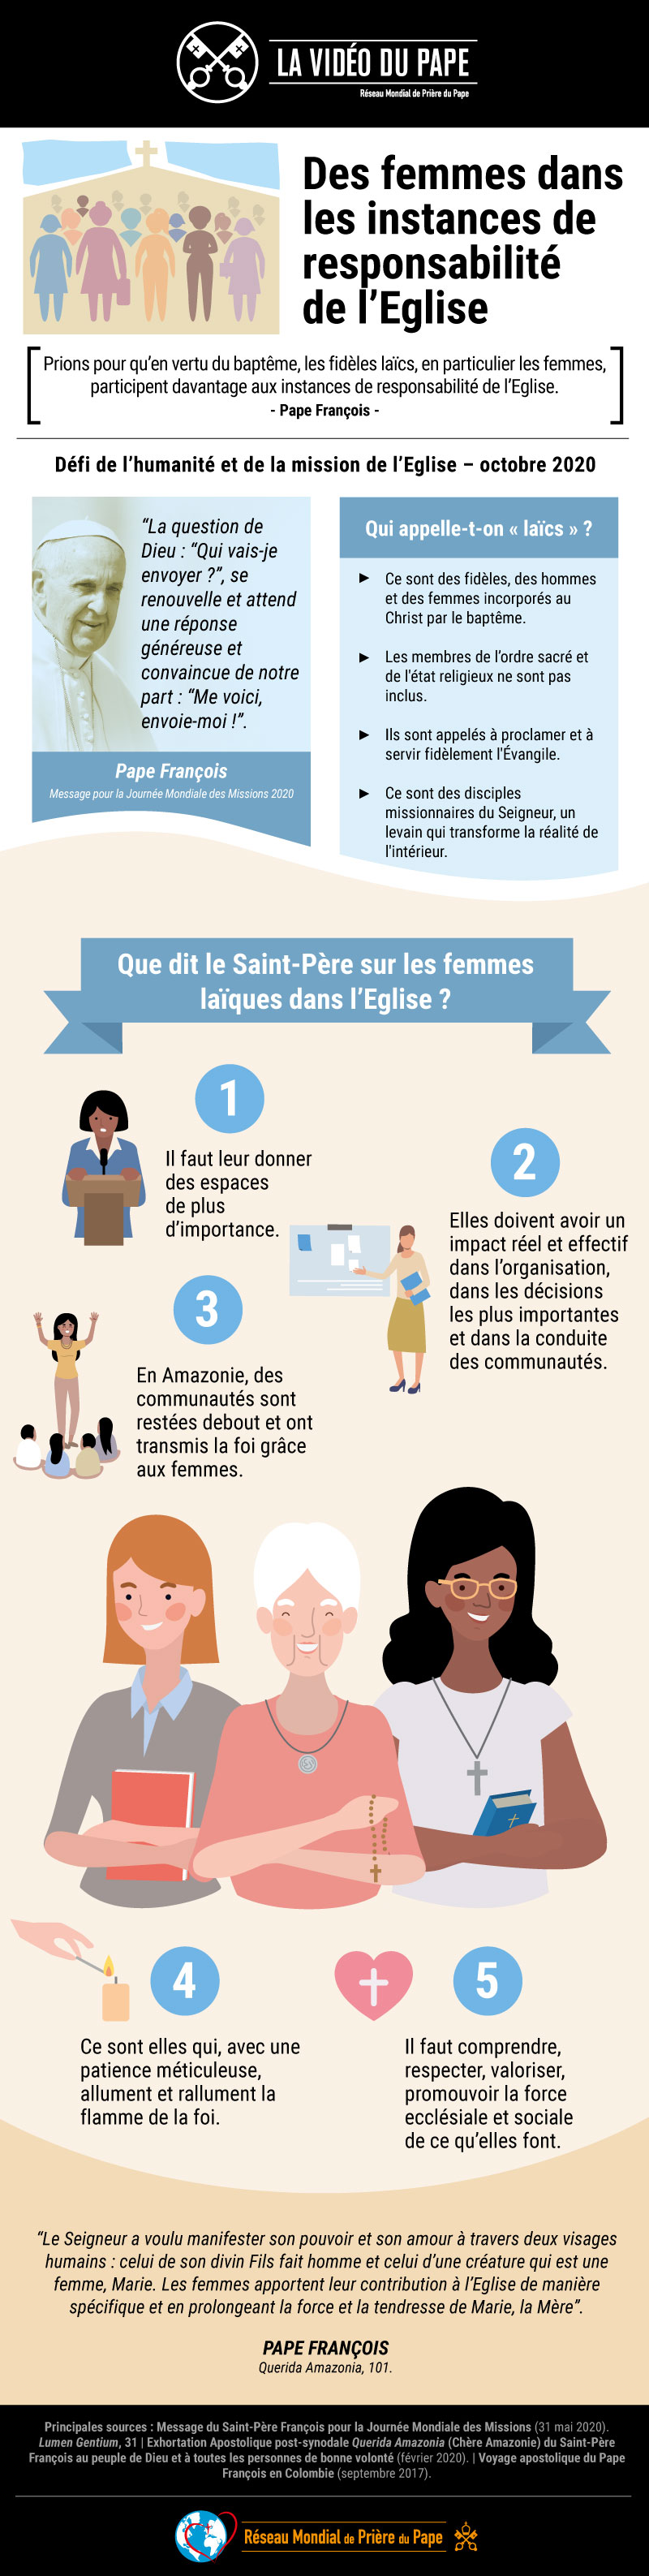 Infografia-TPV-10-2020-FR-La-Vidéo-du-Pape-Des-femmes-dans-les-instances-de-responsabilité-de-lEglise.jpg